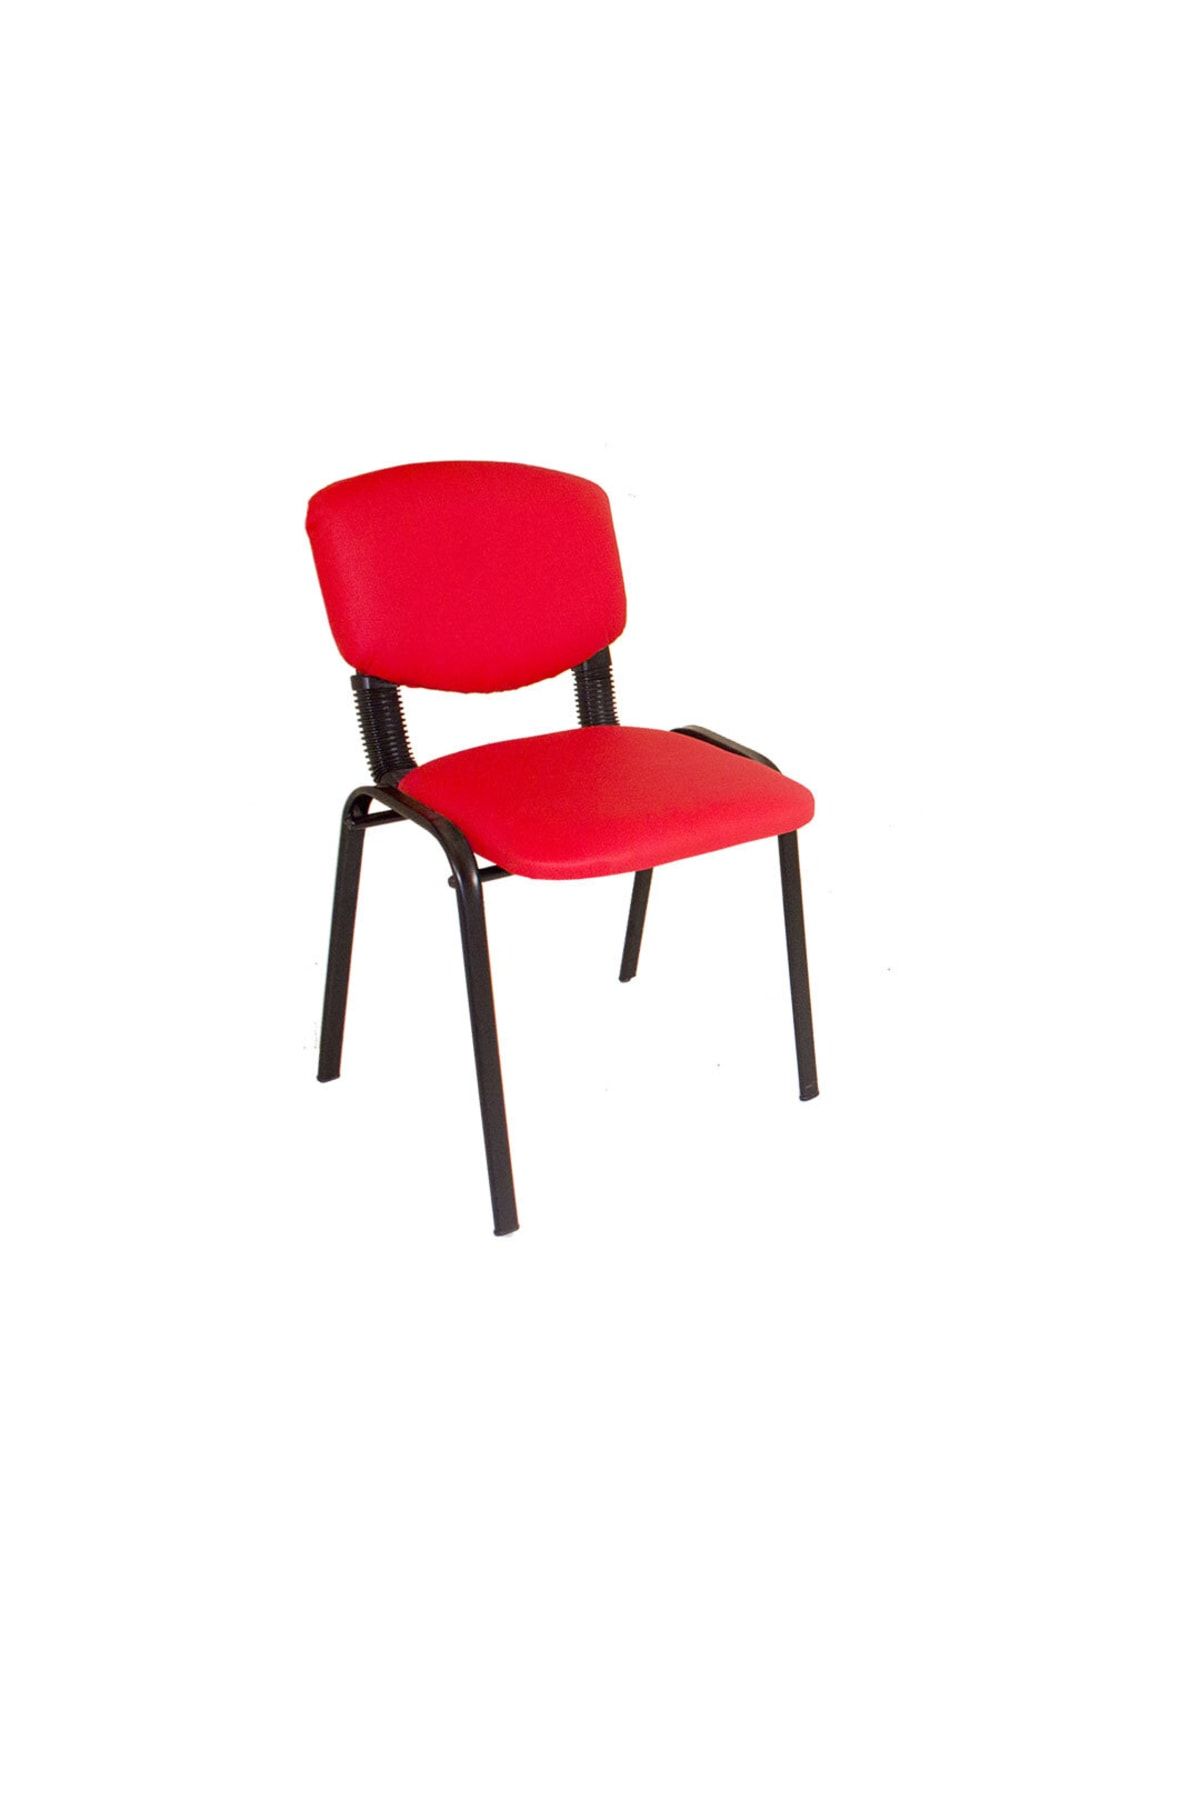 Dockers Form Ofis Ve Toplantı Sandalyesi - Kırmızı